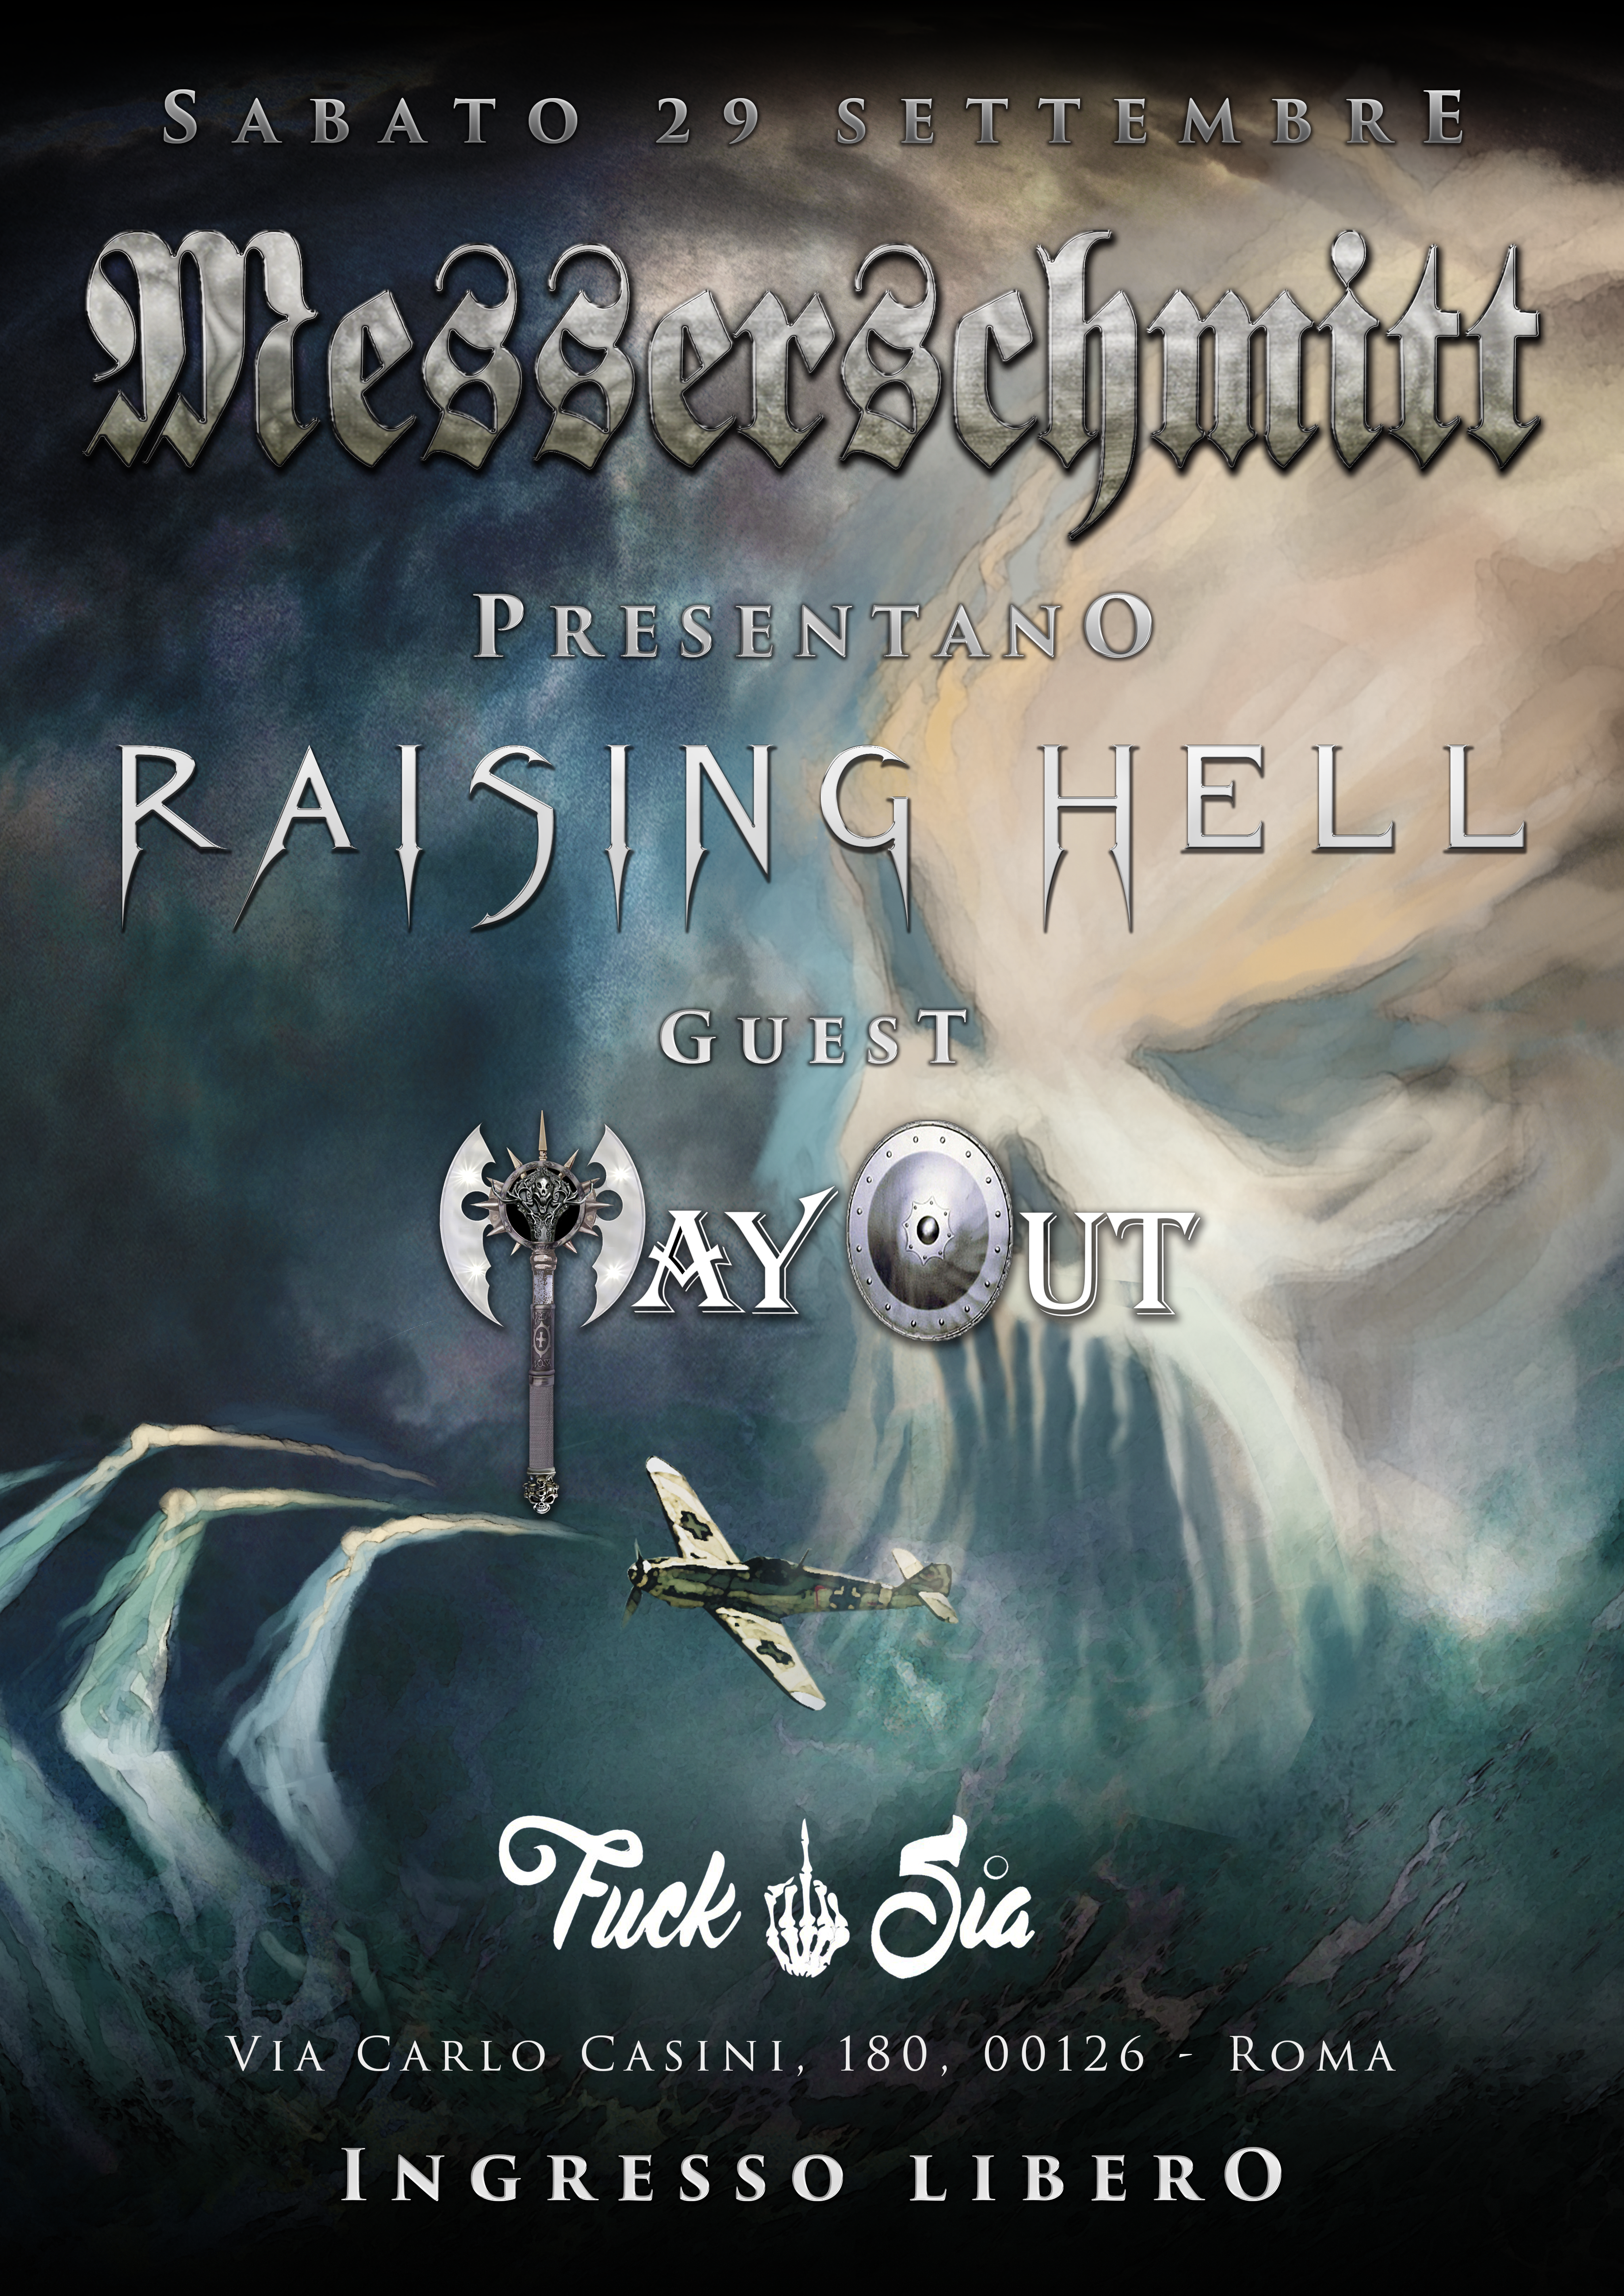 Il 29 settembre al FuckSia: Messerschmitt Raising Hell Release Party